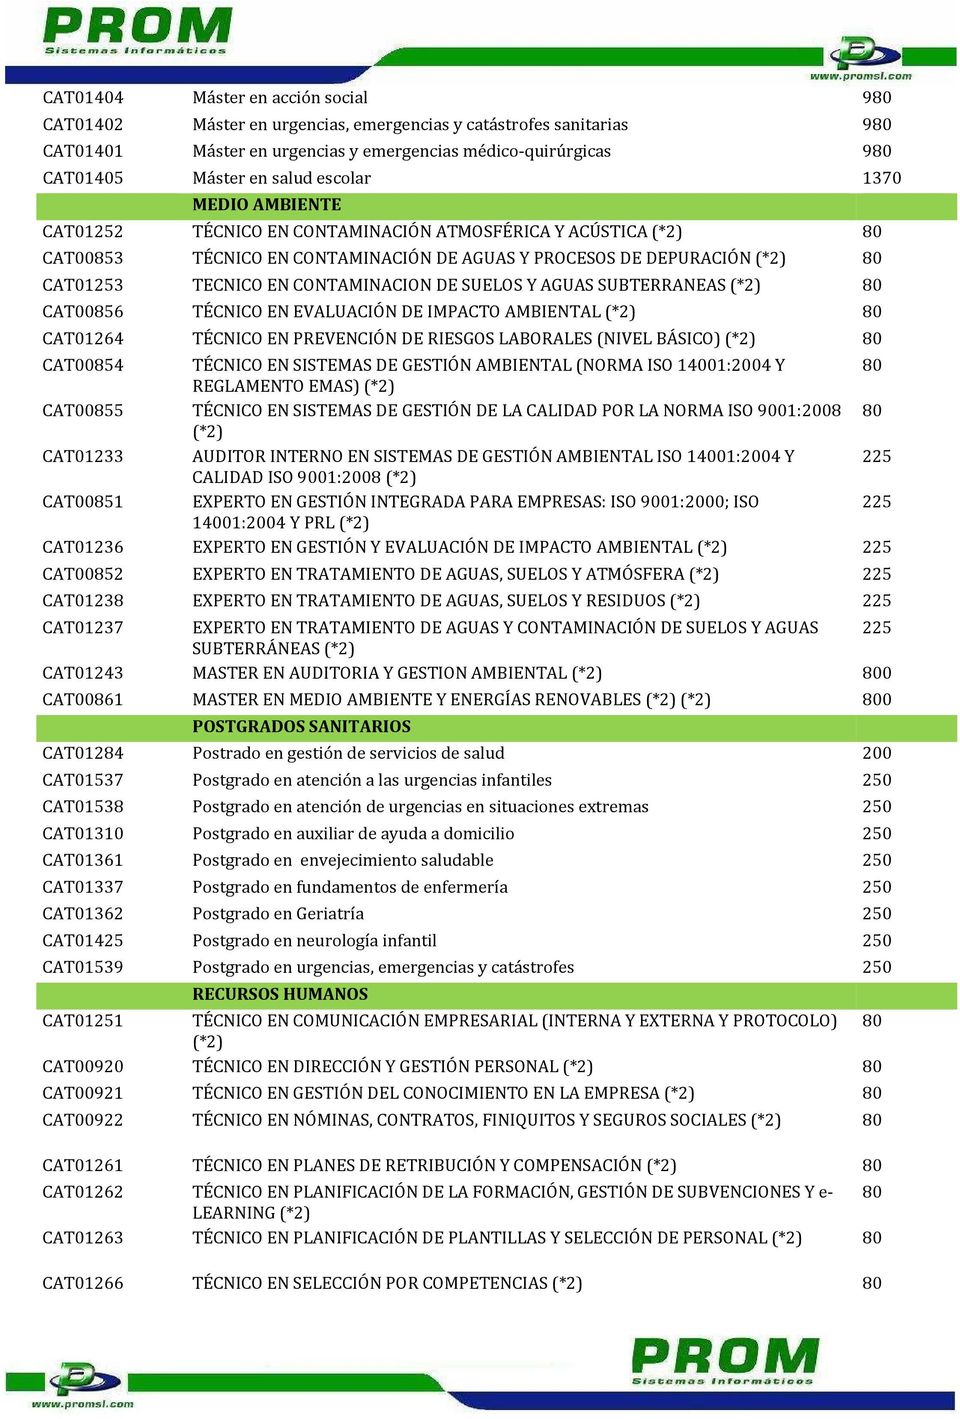 CONTAMINACION DE SUELOS Y AGUAS SUBTERRANEAS (*2) 80 CAT00856 TÉCNICO EN EVALUACIÓN DE IMPACTO AMBIENTAL (*2) 80 CAT01264 TÉCNICO EN PREVENCIÓN DE RIESGOS LABORALES (NIVEL BÁSICO) (*2) 80 CAT00854